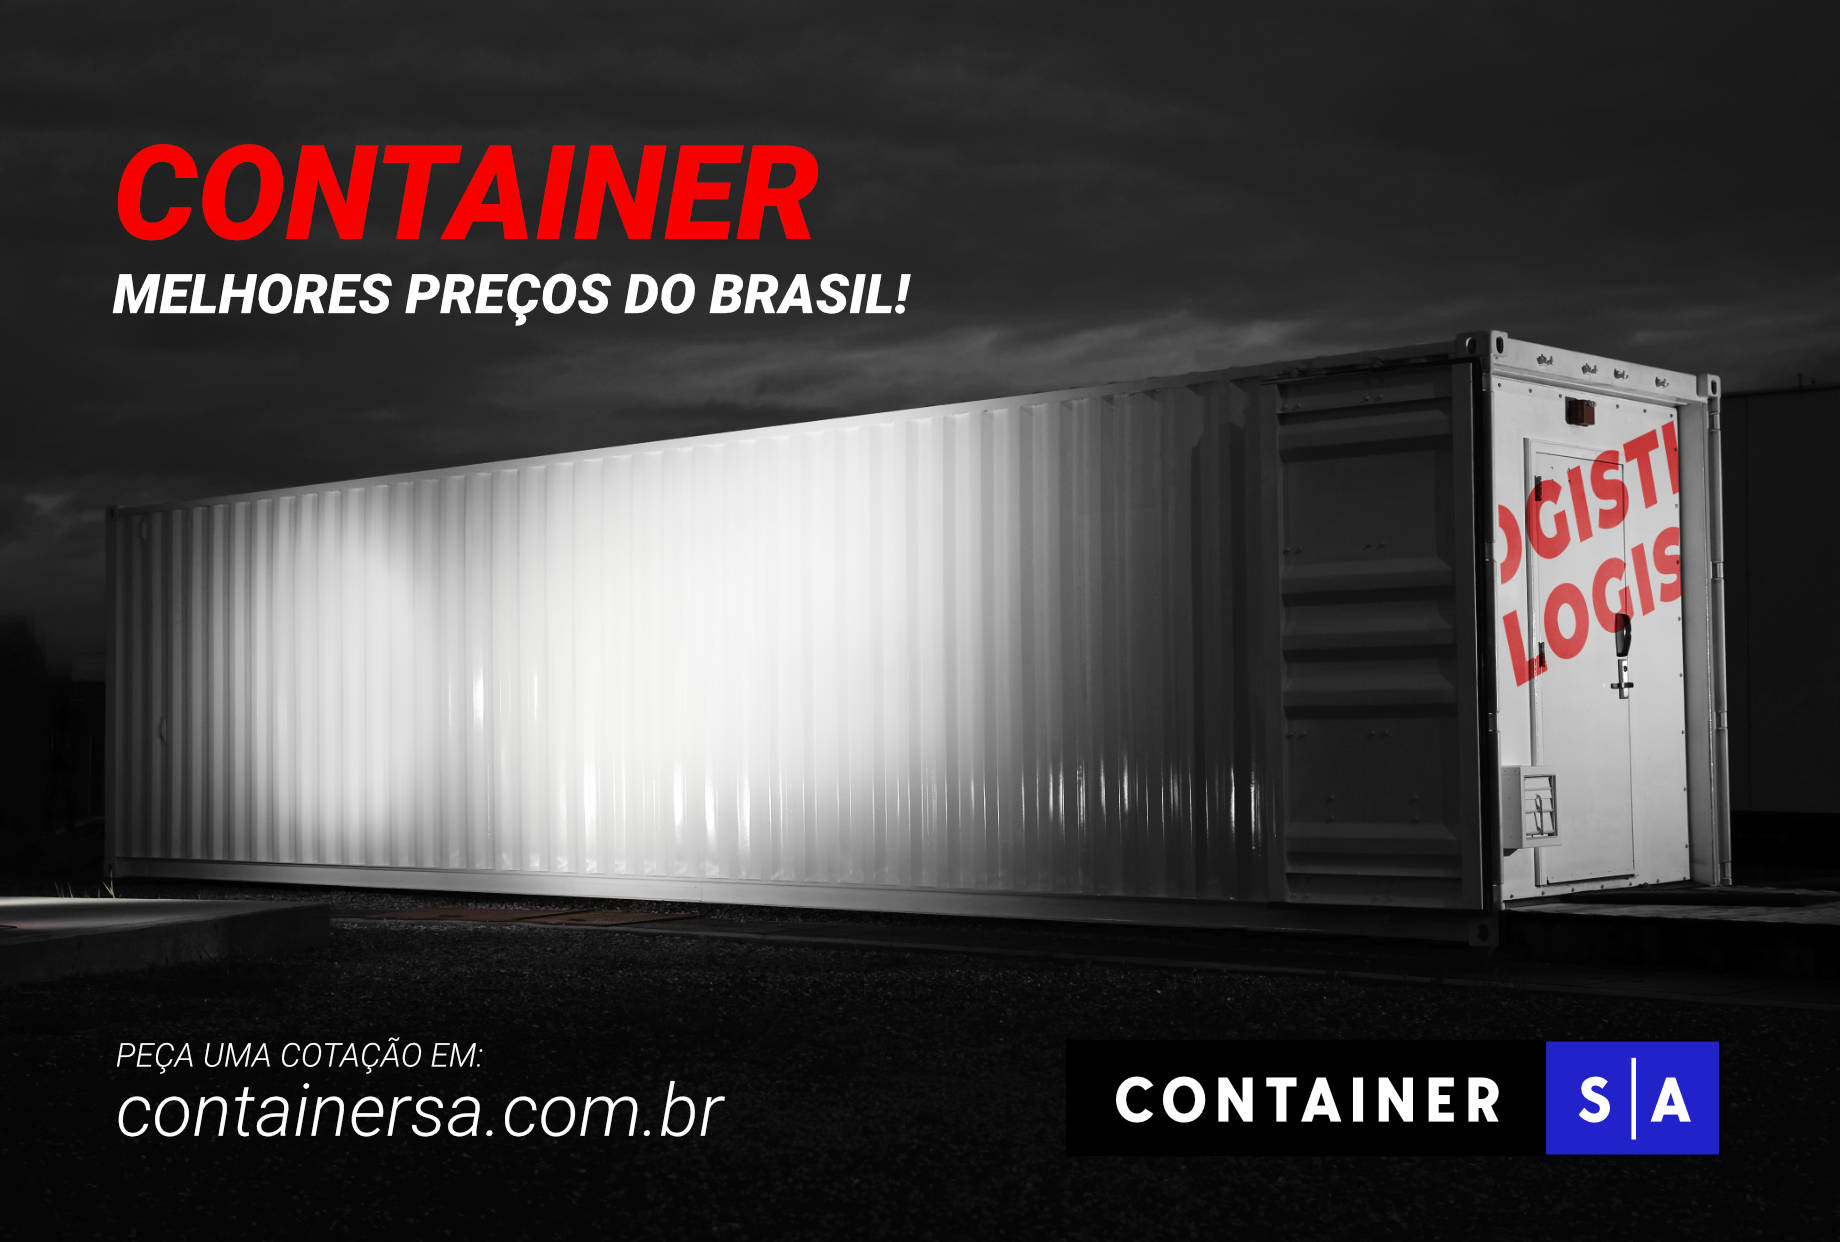 (c) Containersa.com.br